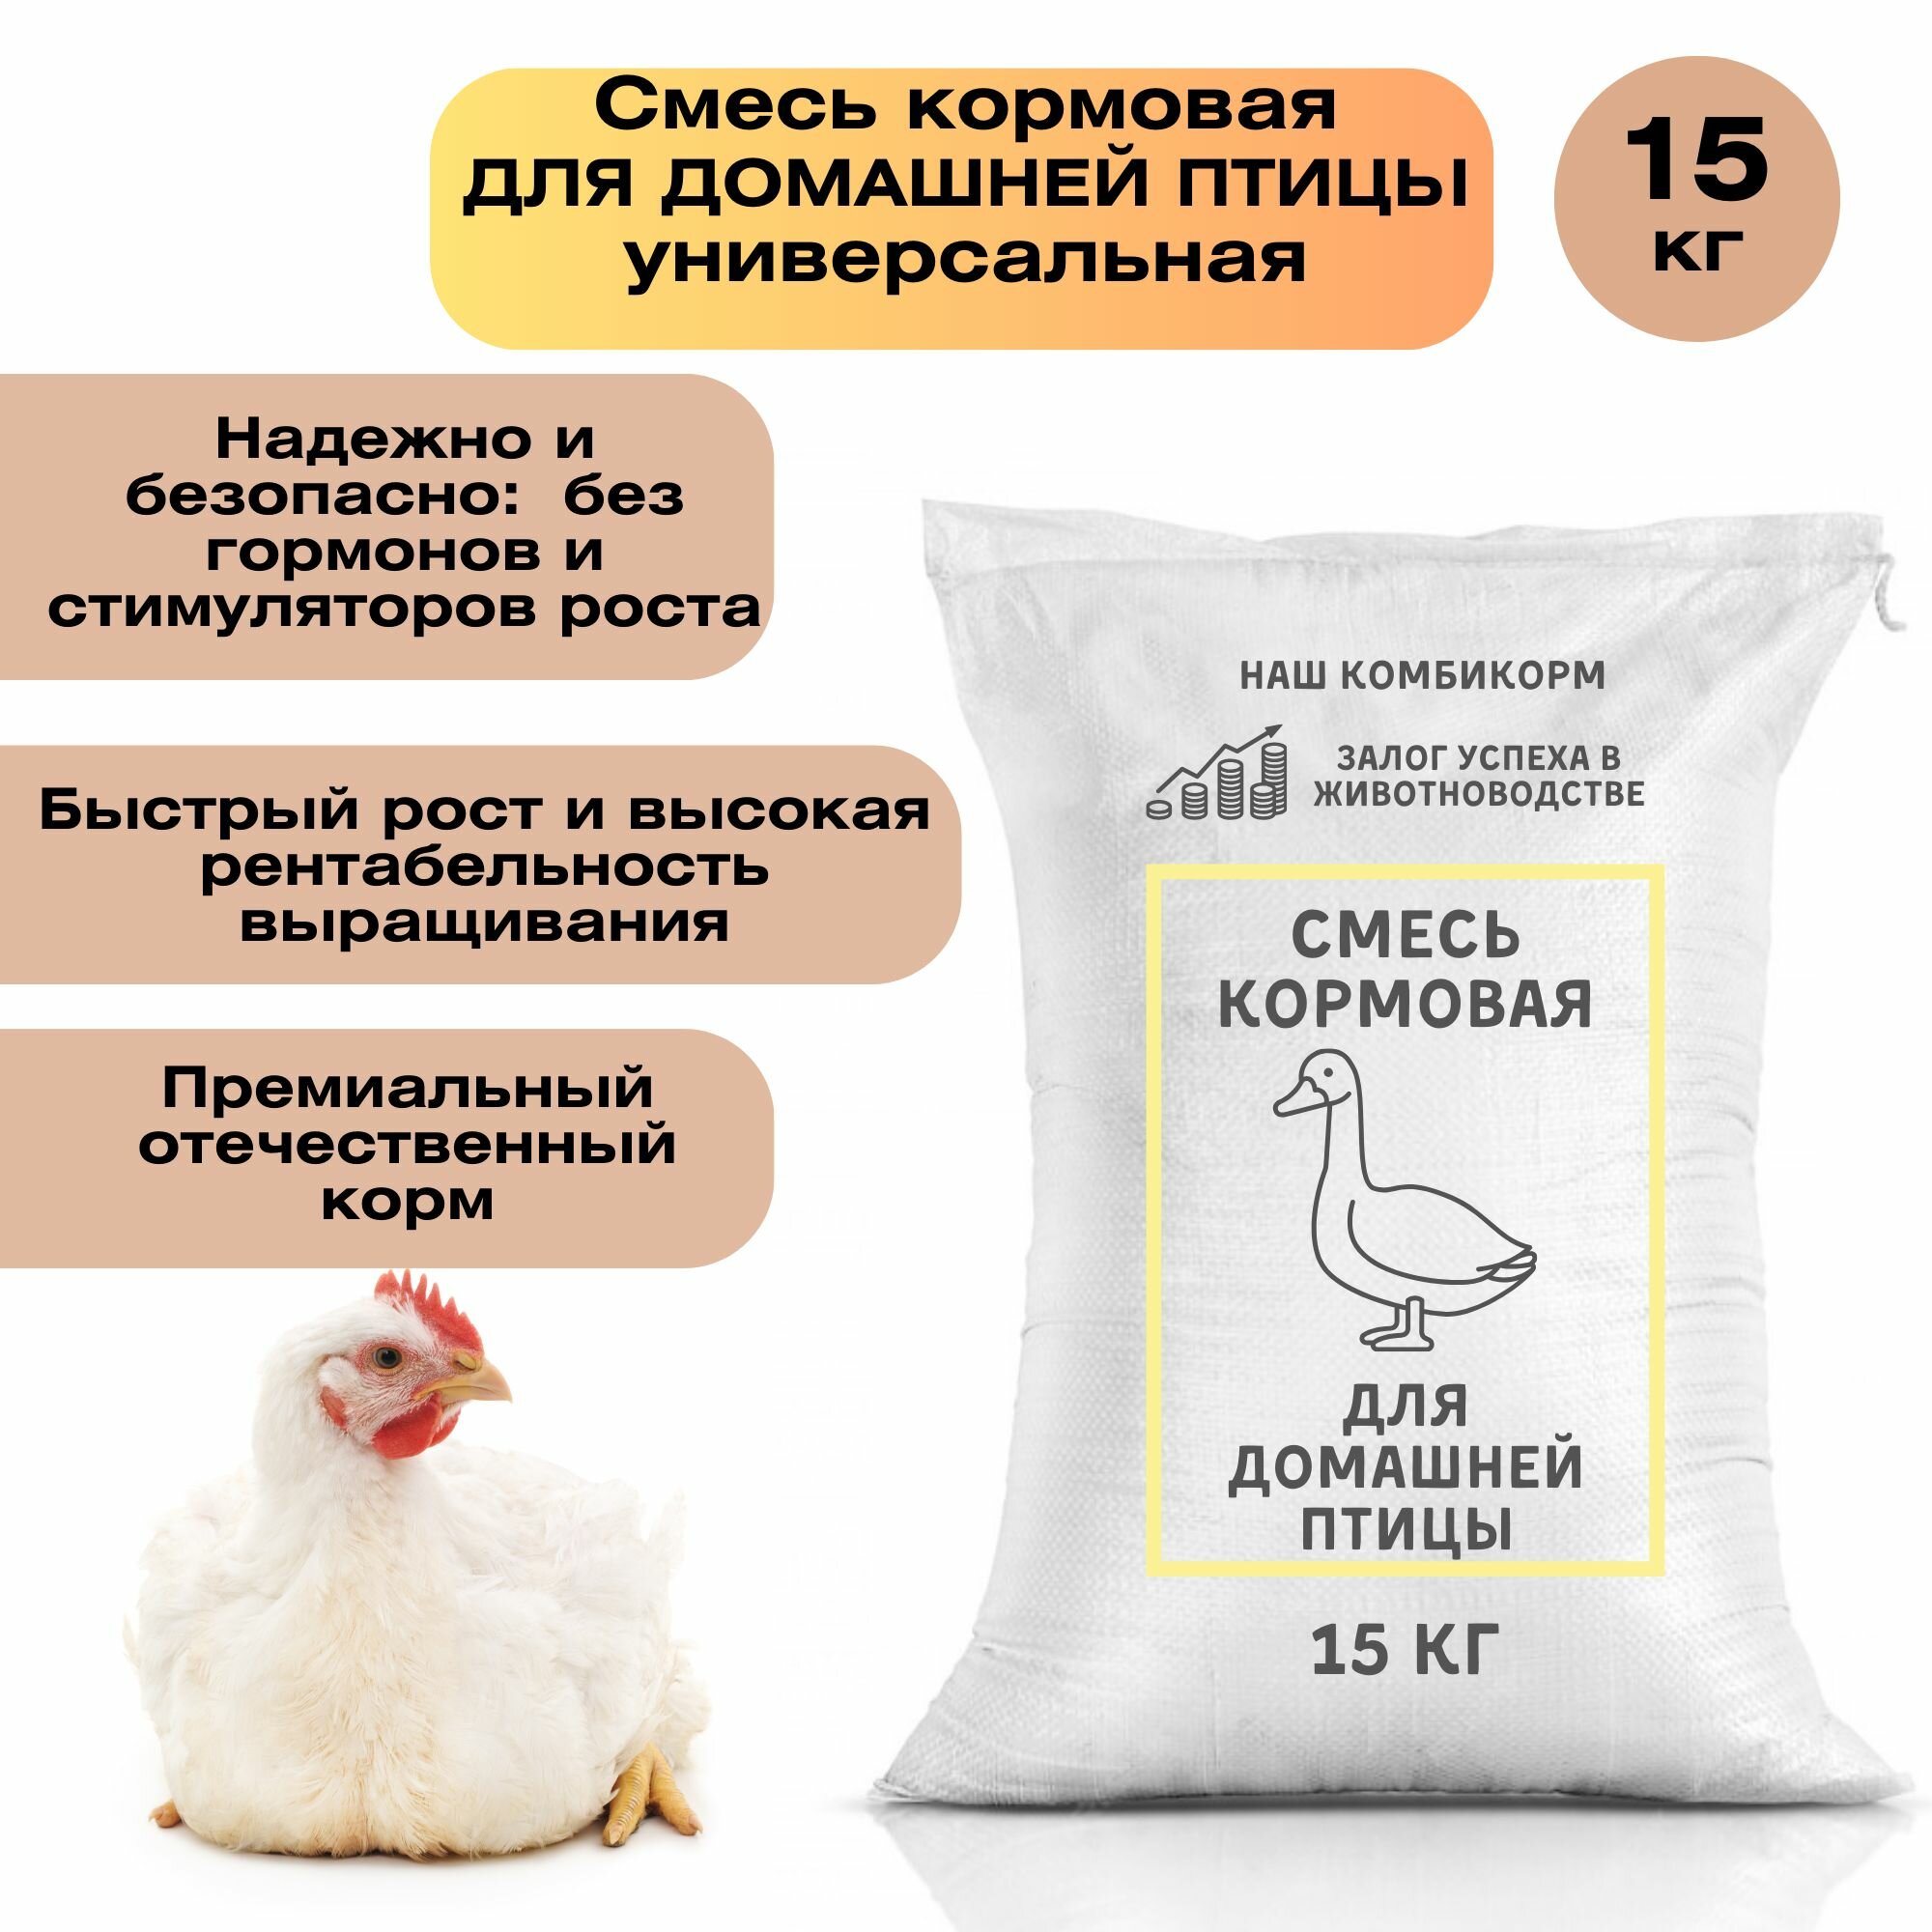 Универсальный комбикорм для птицы 15 кг с оптимальным балансом питательных веществ и микроэлементов для роста и развития домашней птицы